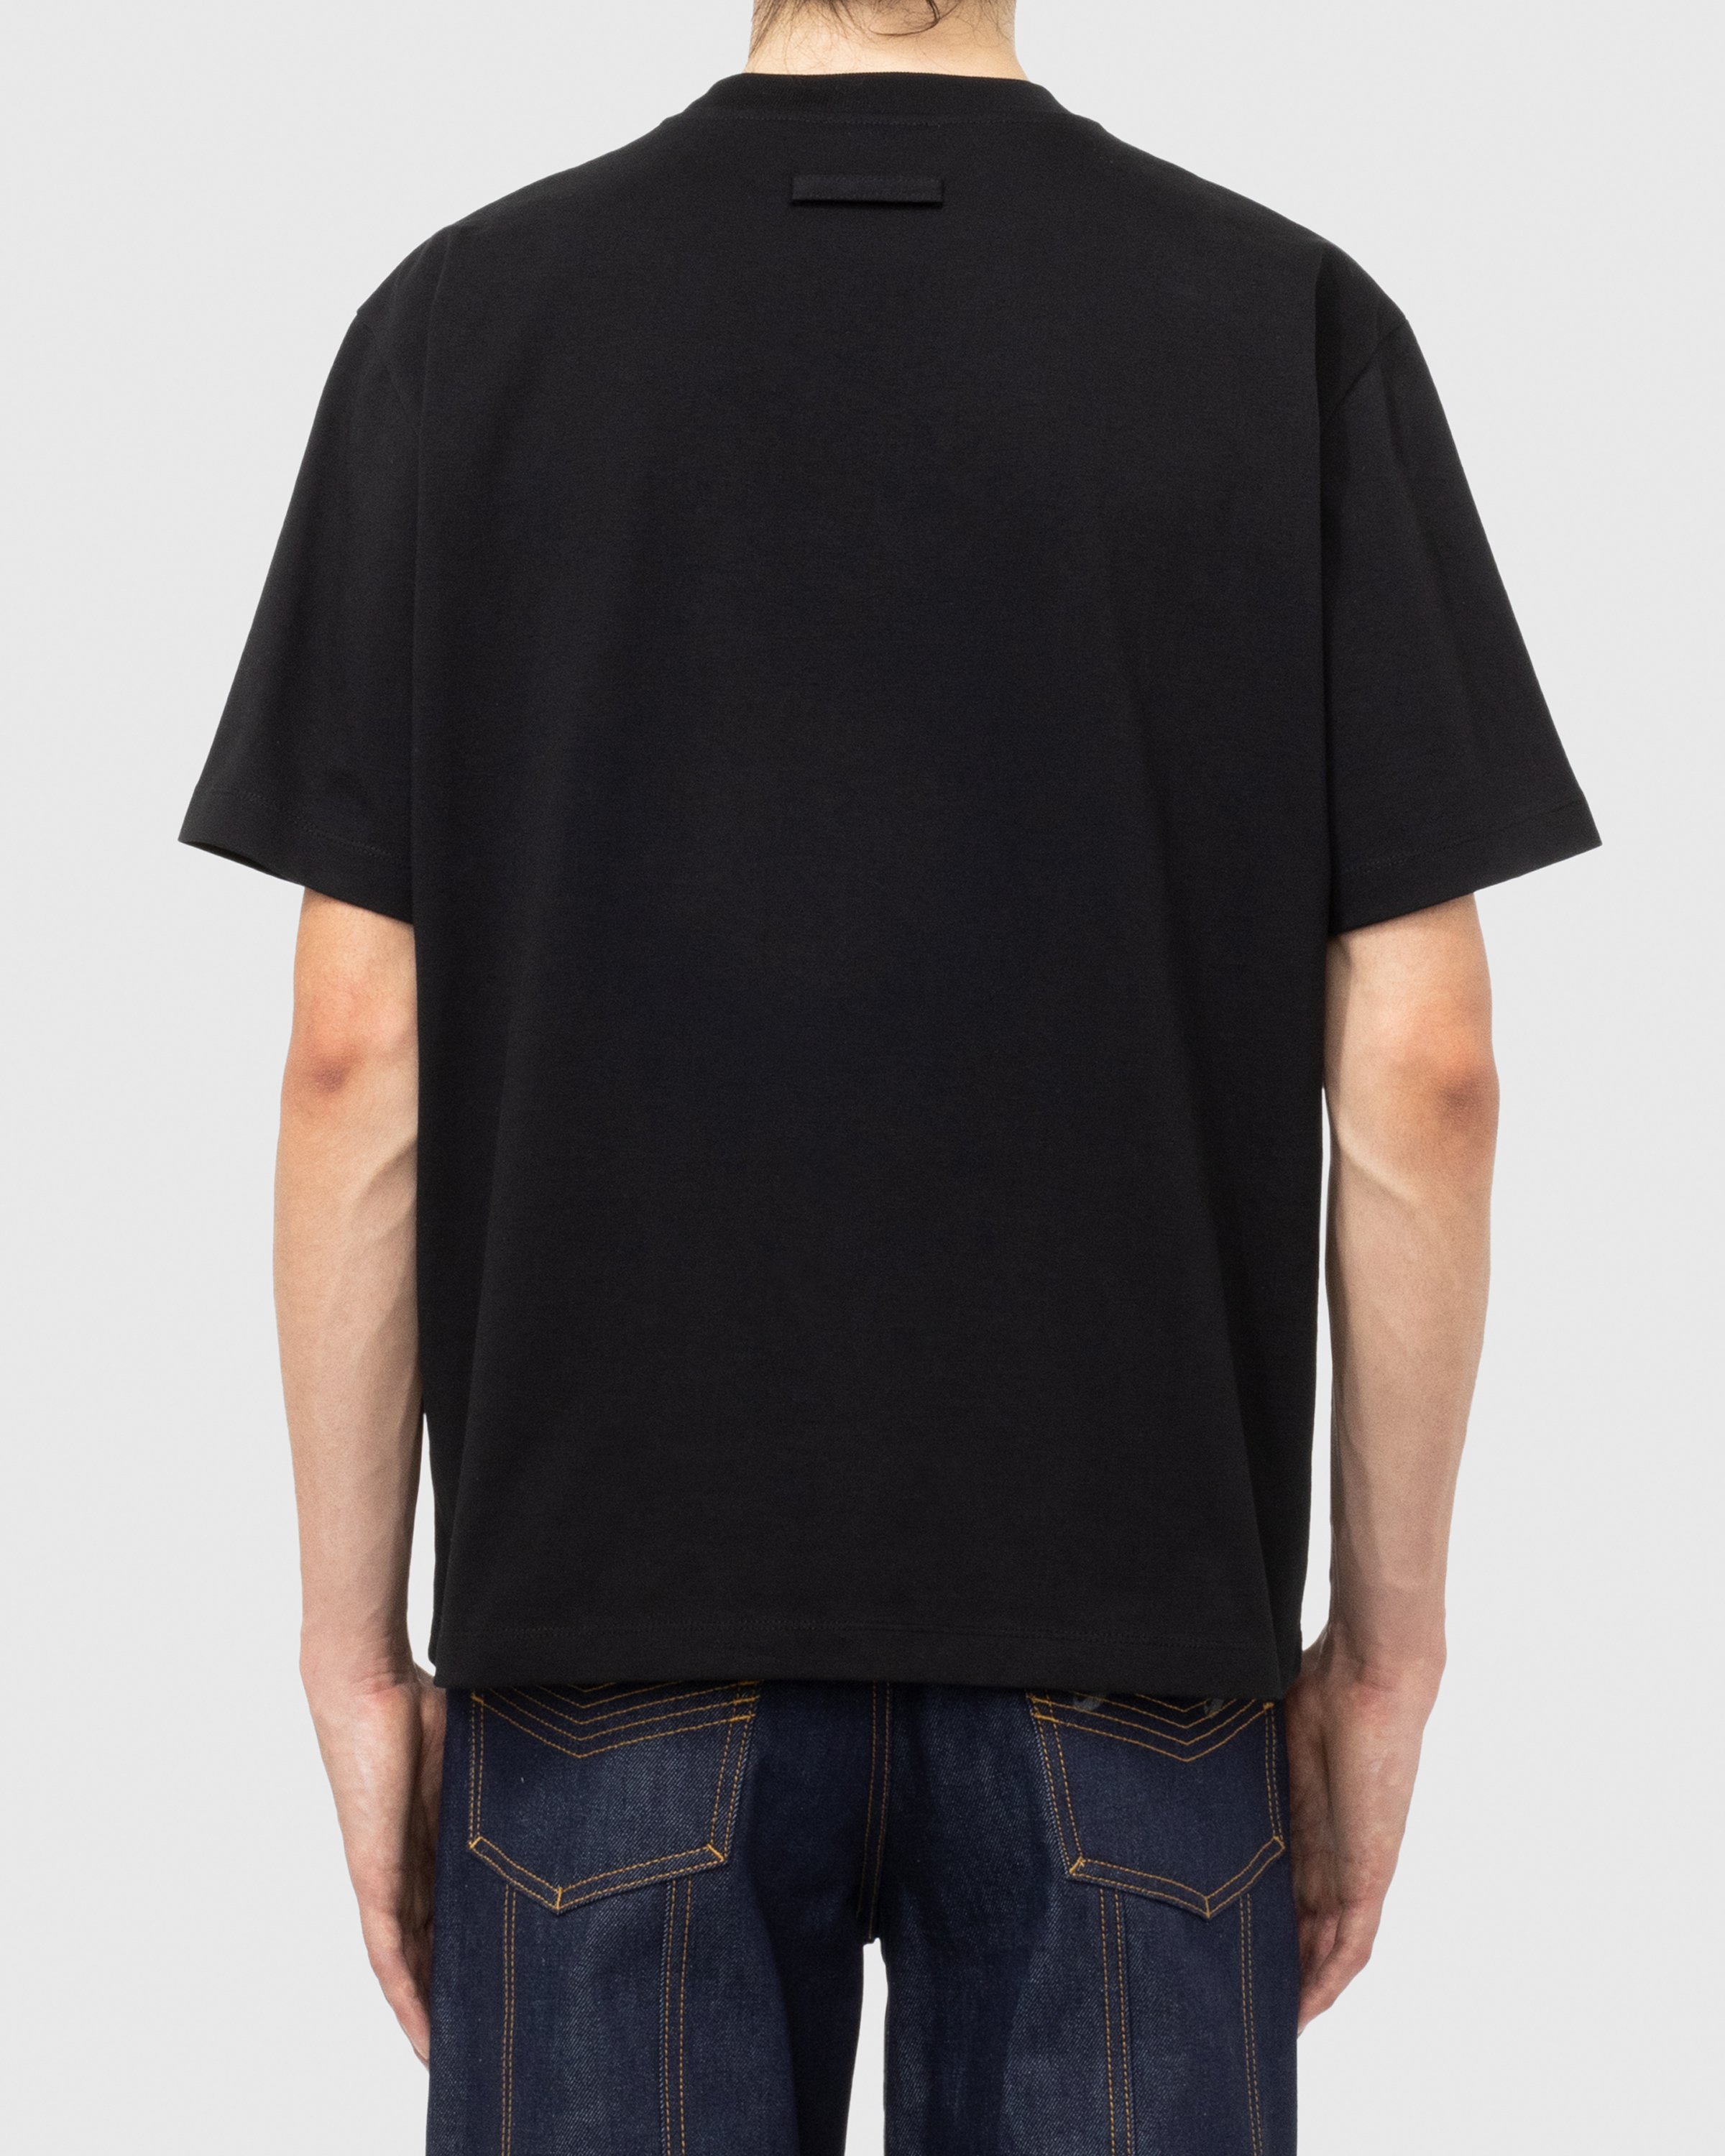 Jean Paul Gaultier - Évidemment T-Shirt Black - Clothing - Black - Image 4